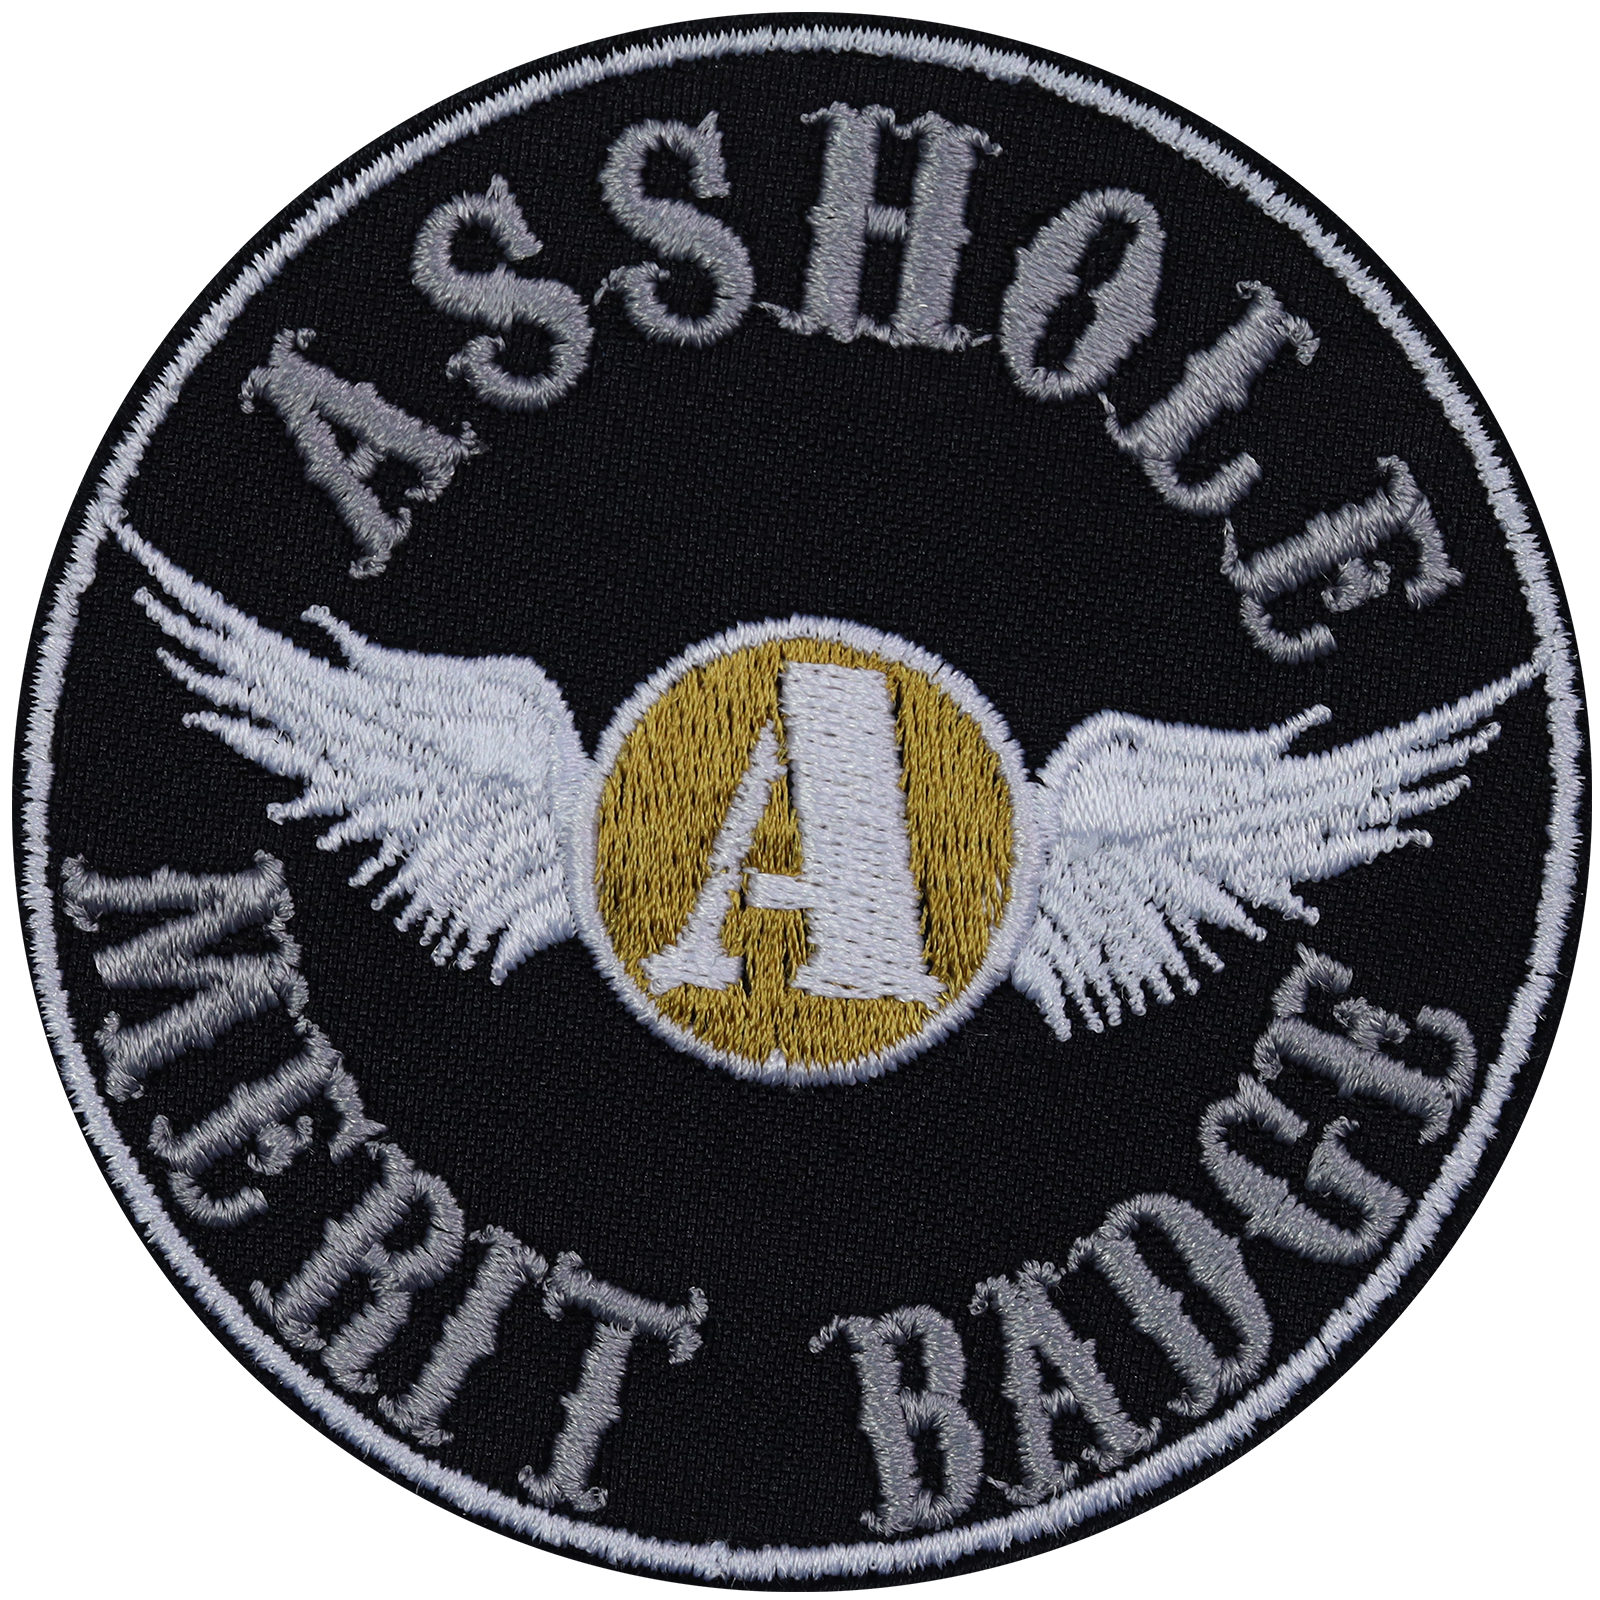 Asshole merit badge - Patch